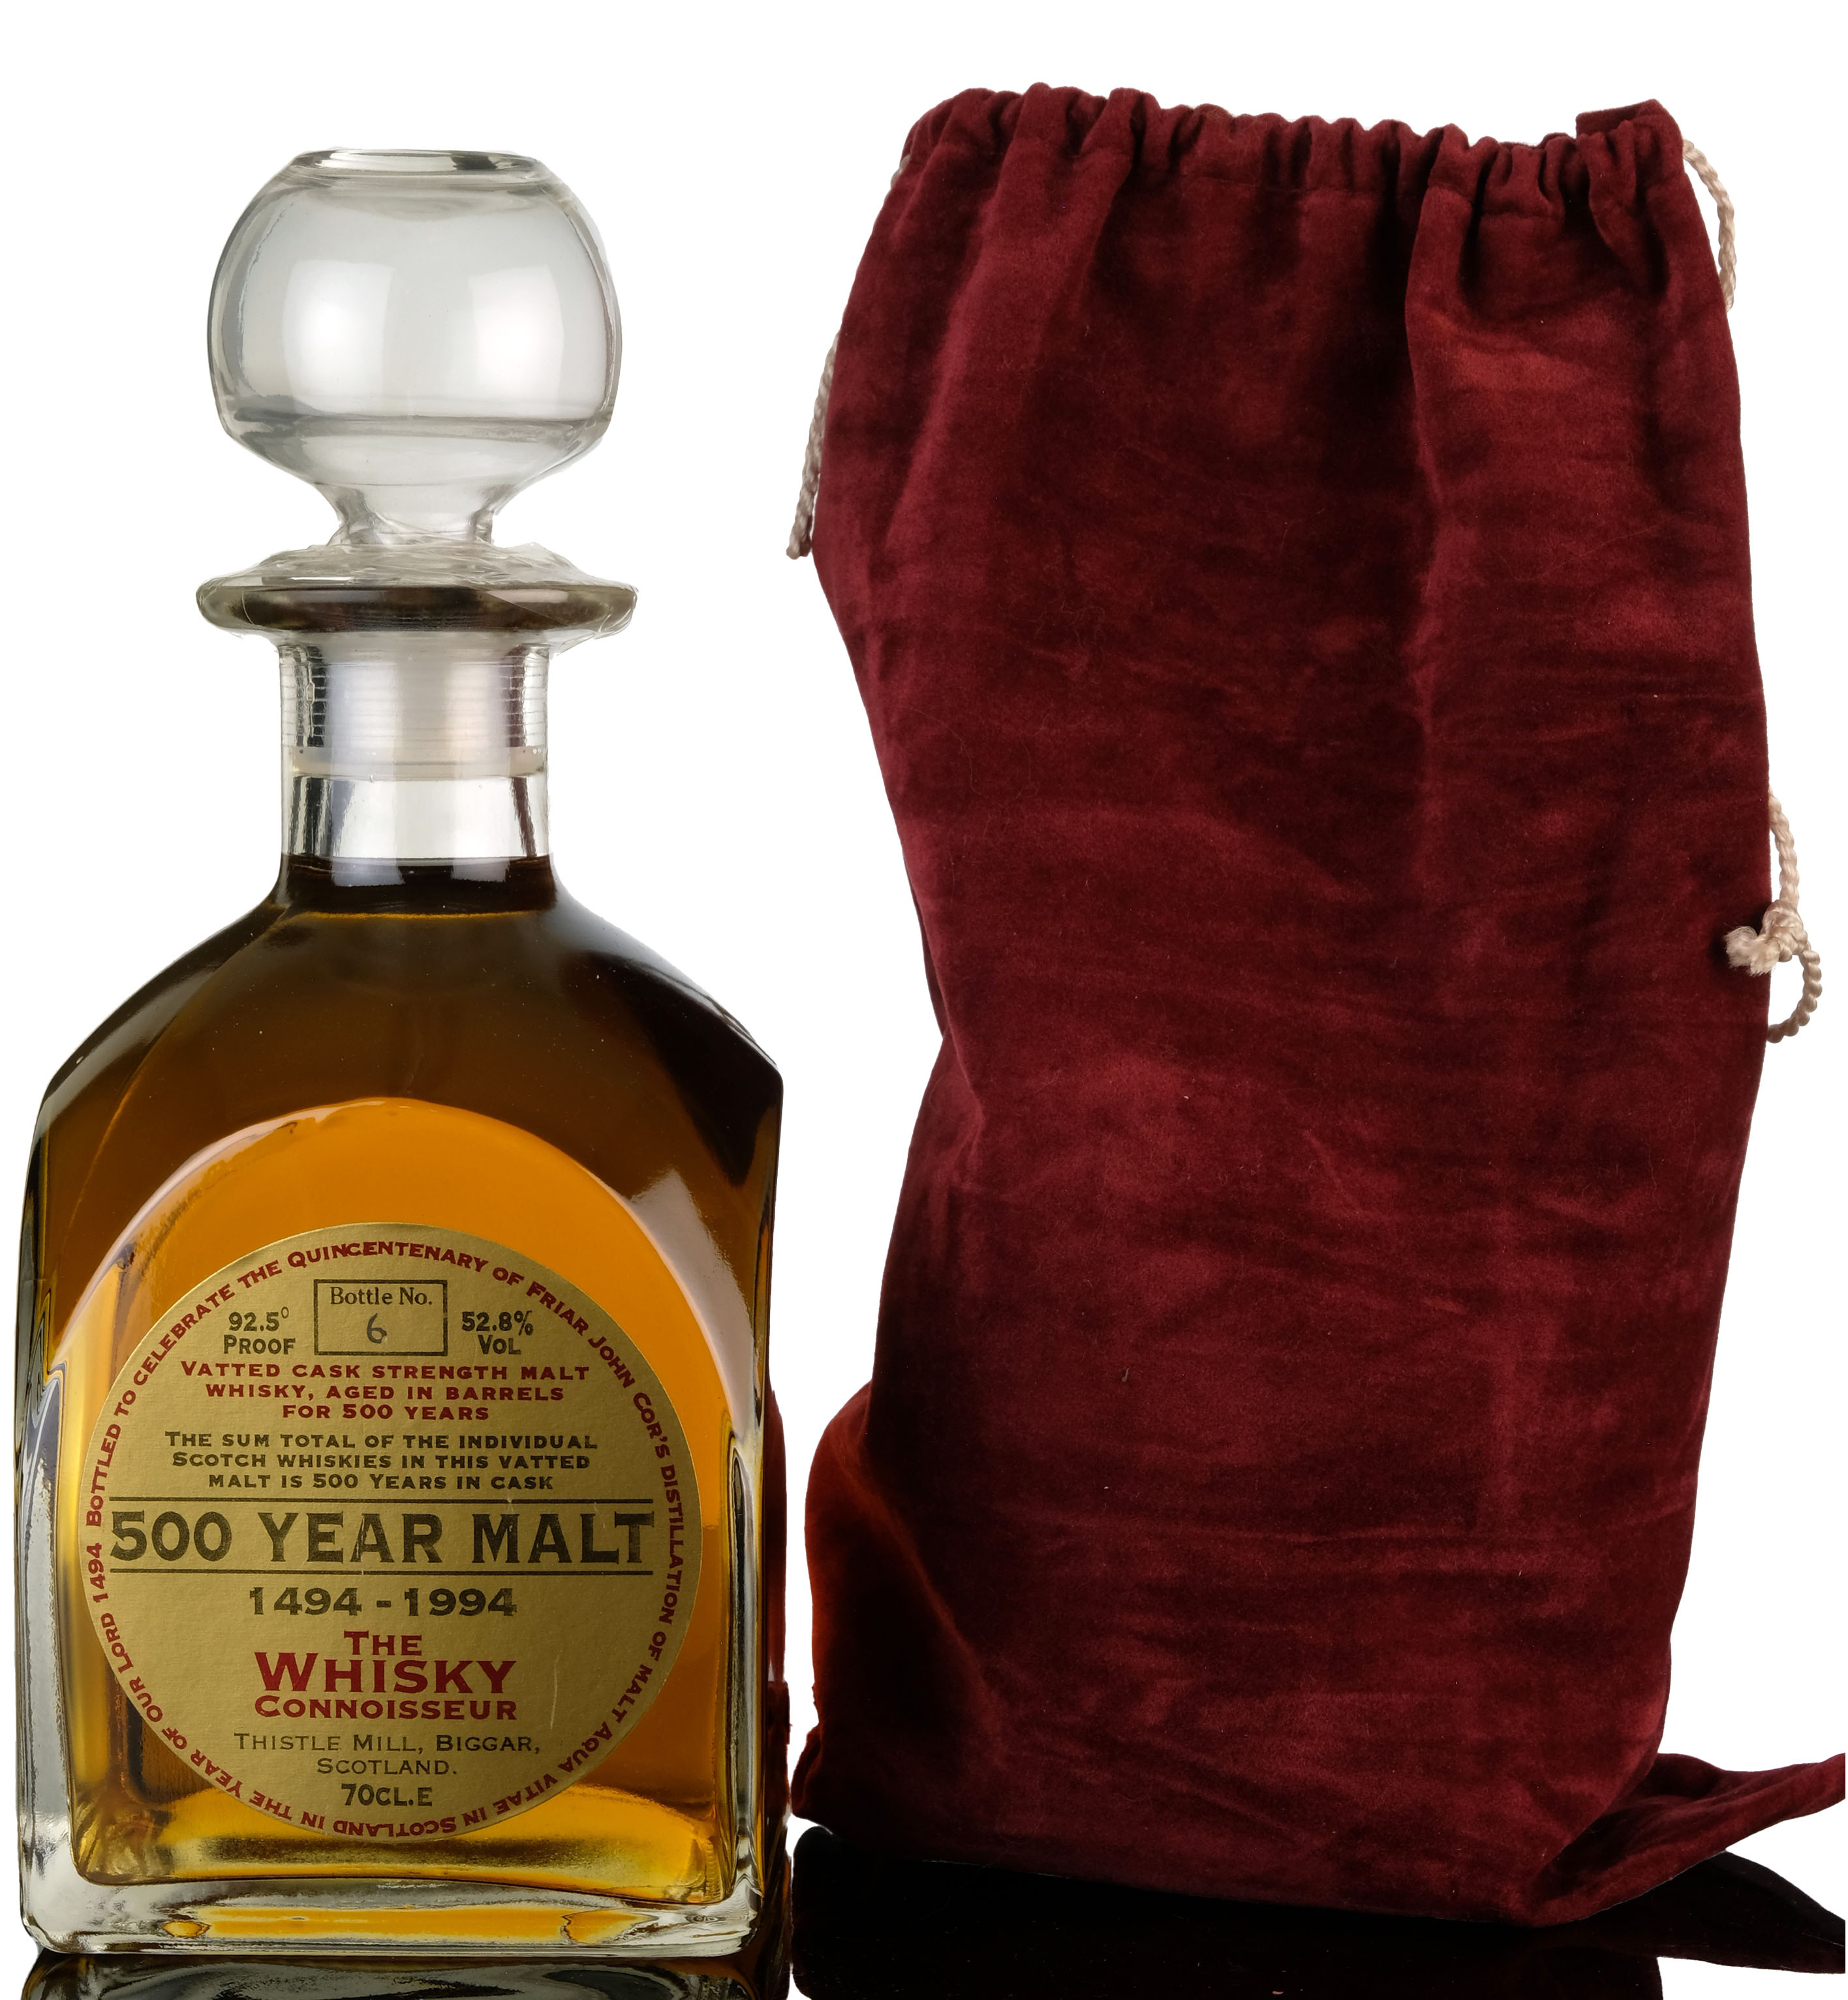 500 Year Malt 1494-1994 - The Whisky Connoisseur